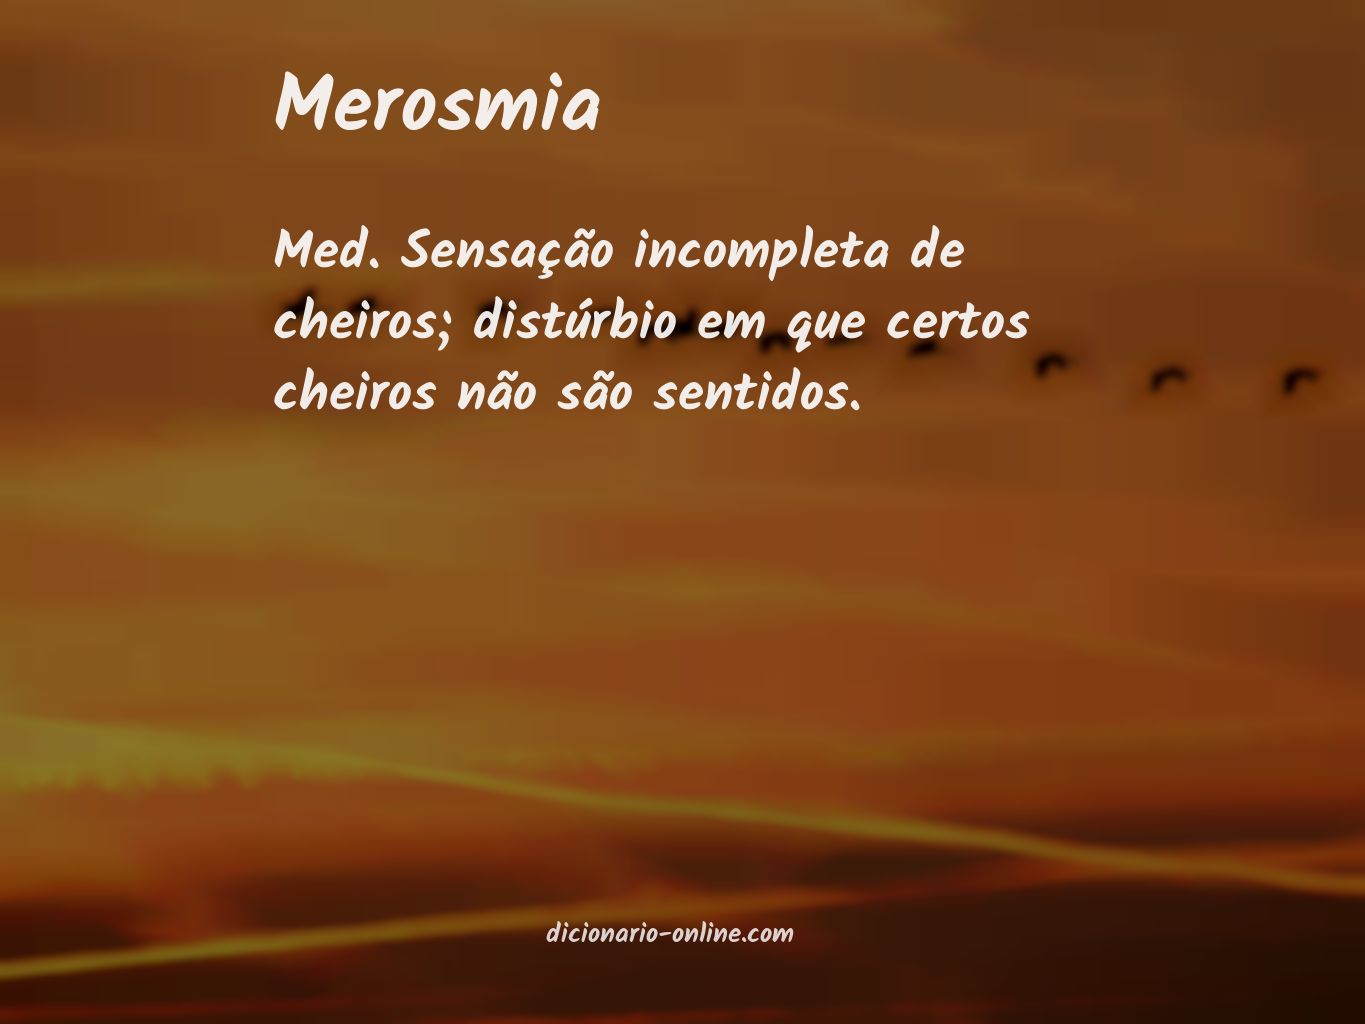 Significado de merosmia